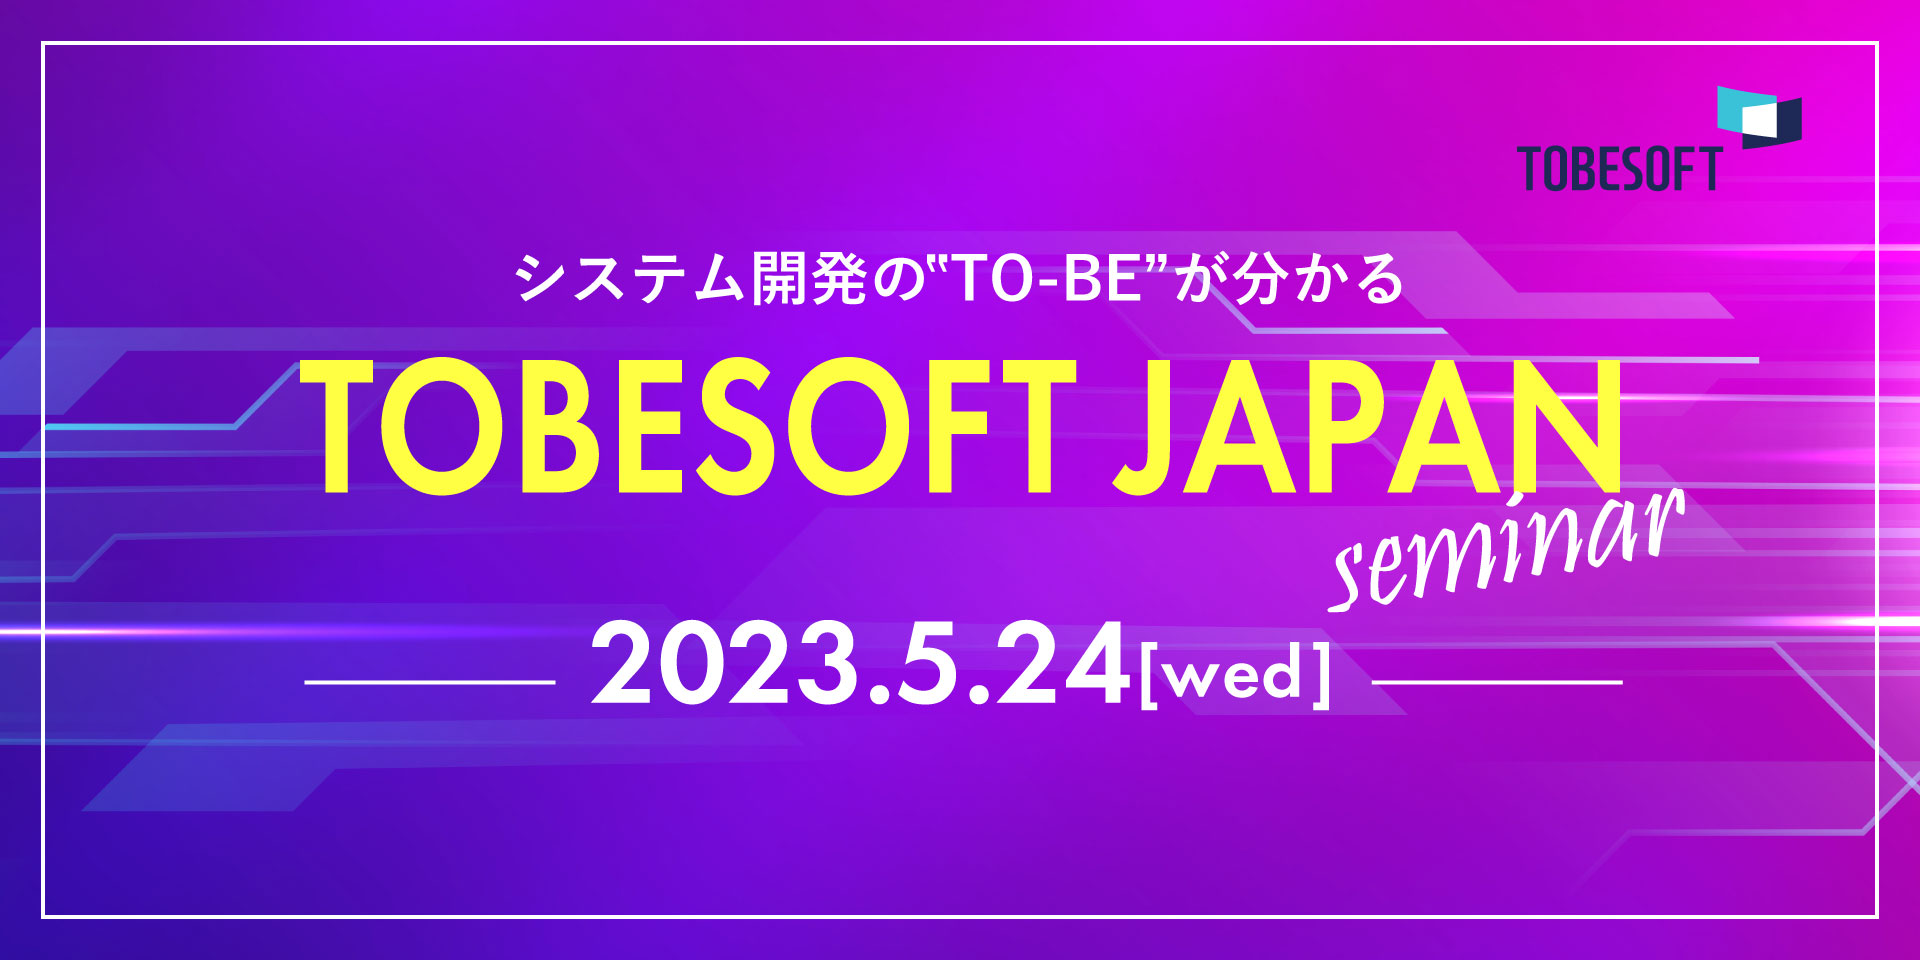 TOBESOFT JAPANセミナー